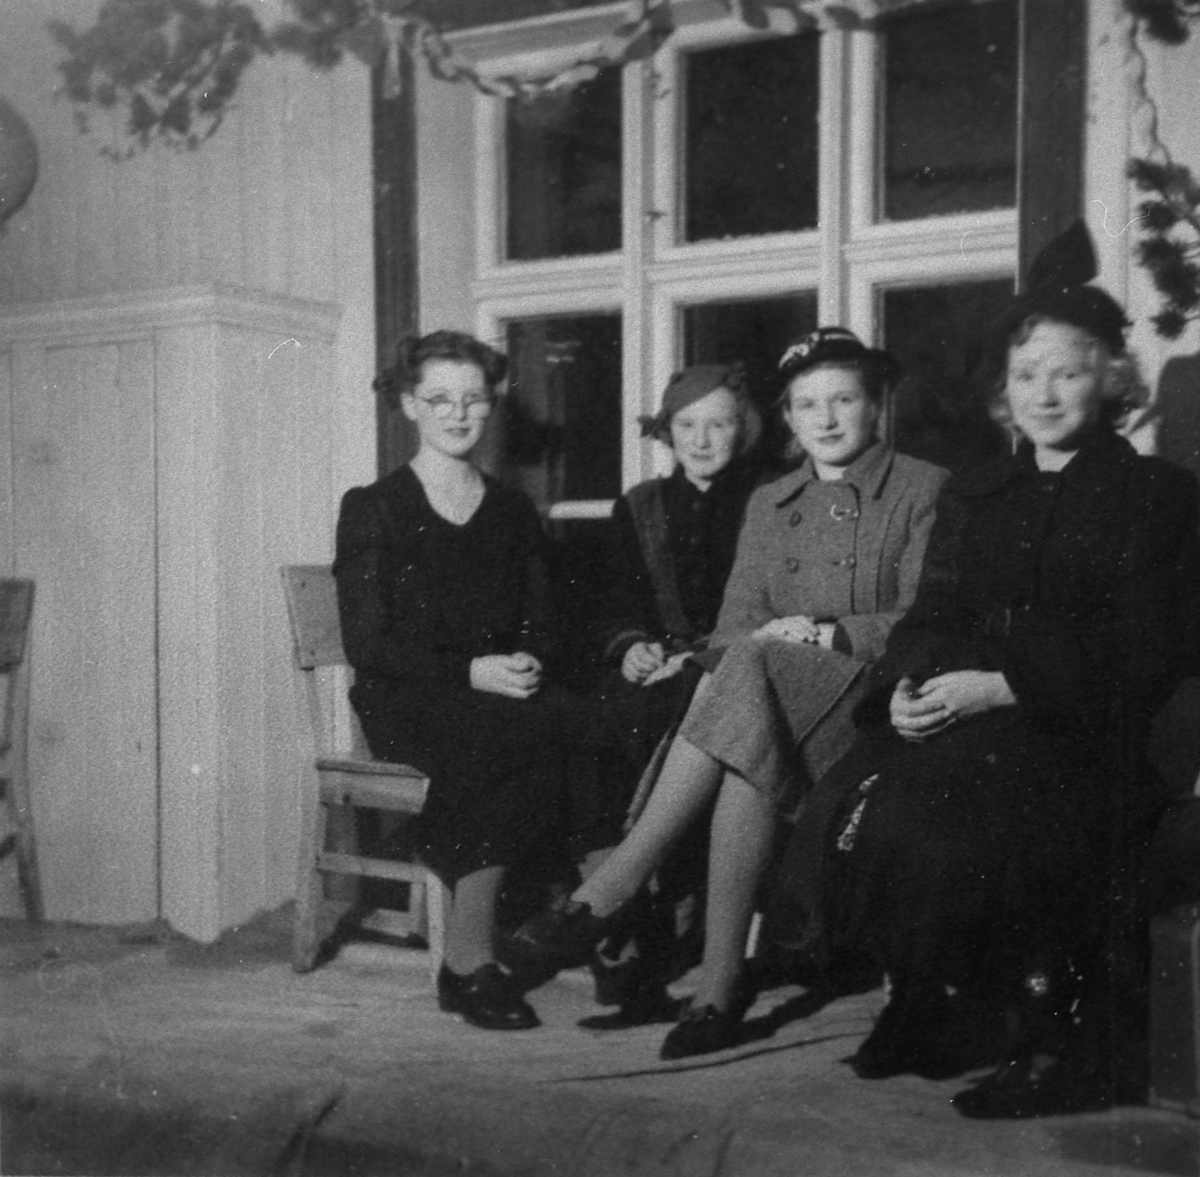 Juletrefest på Refsnes i Tranøy i 1952.
Inger-Else Rødser, Helen Jørgensen, Svanhild Svandal og Eva Uteng.